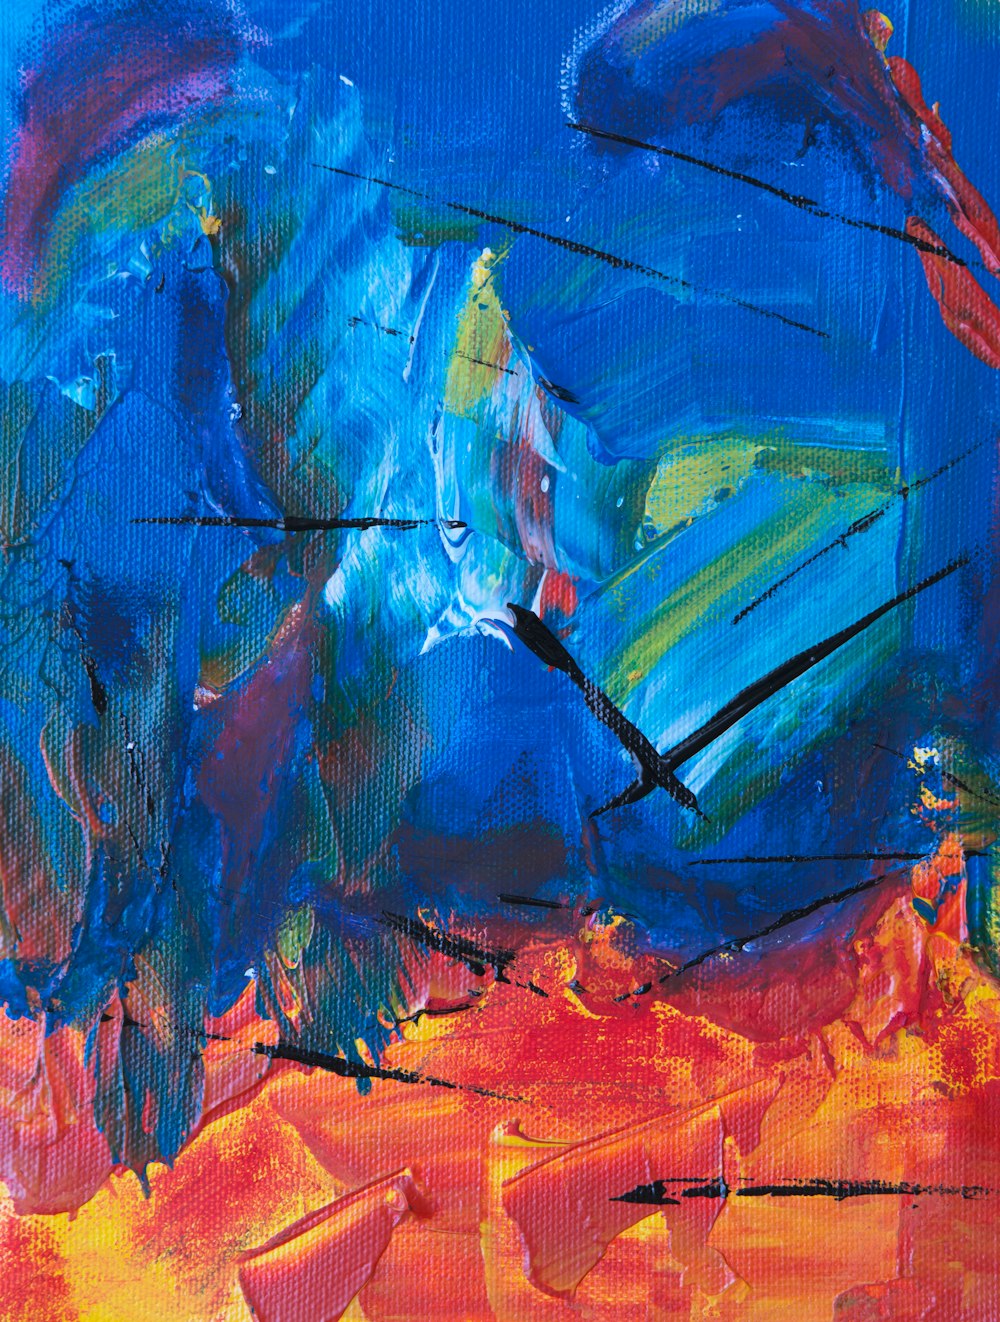 pintura abstracta azul, roja y verde